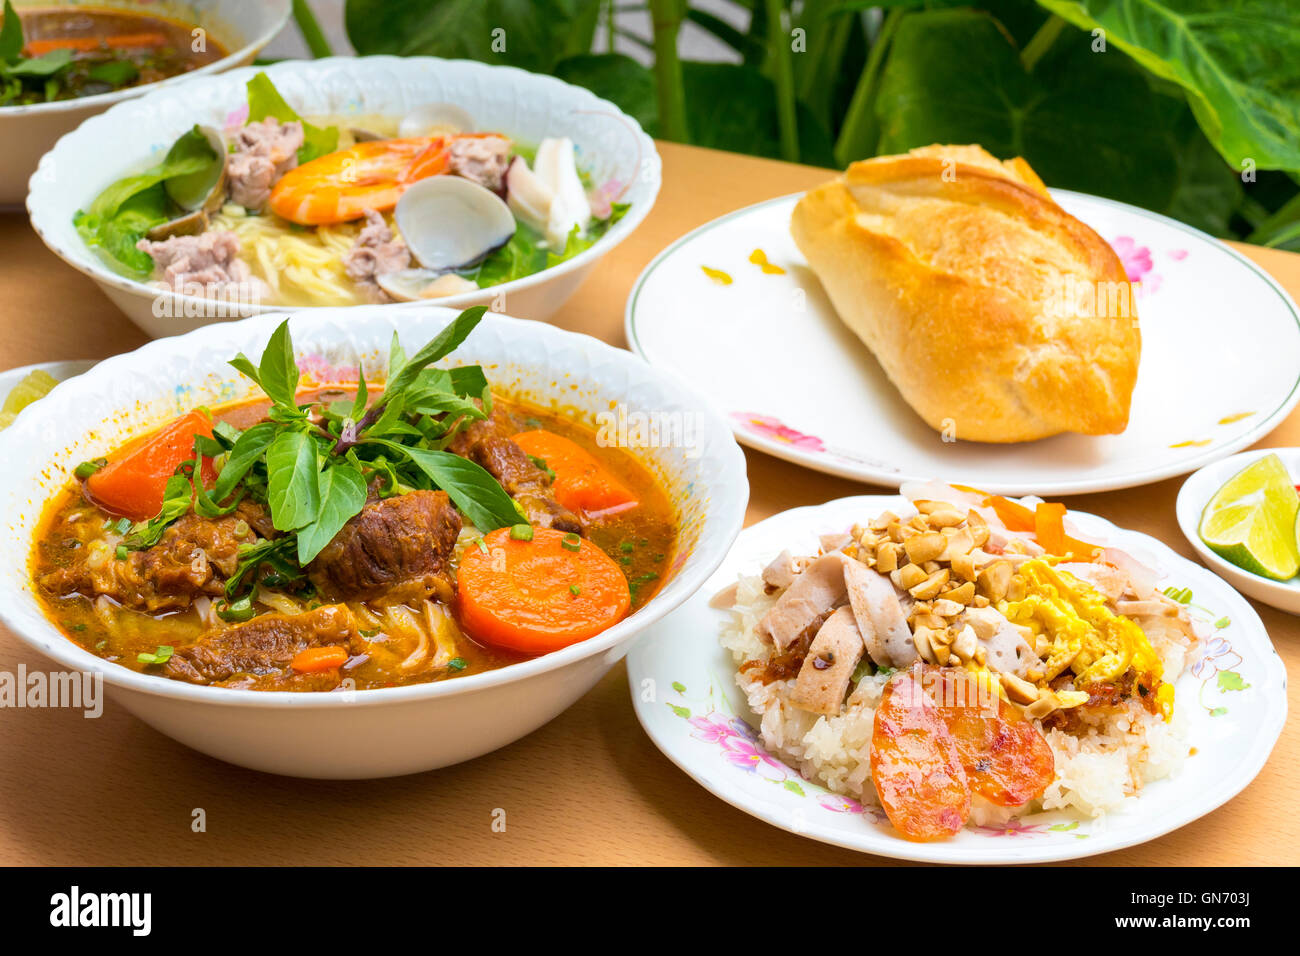 Vietnamese Cuisine, Taipei, Taiwan Stock Photo